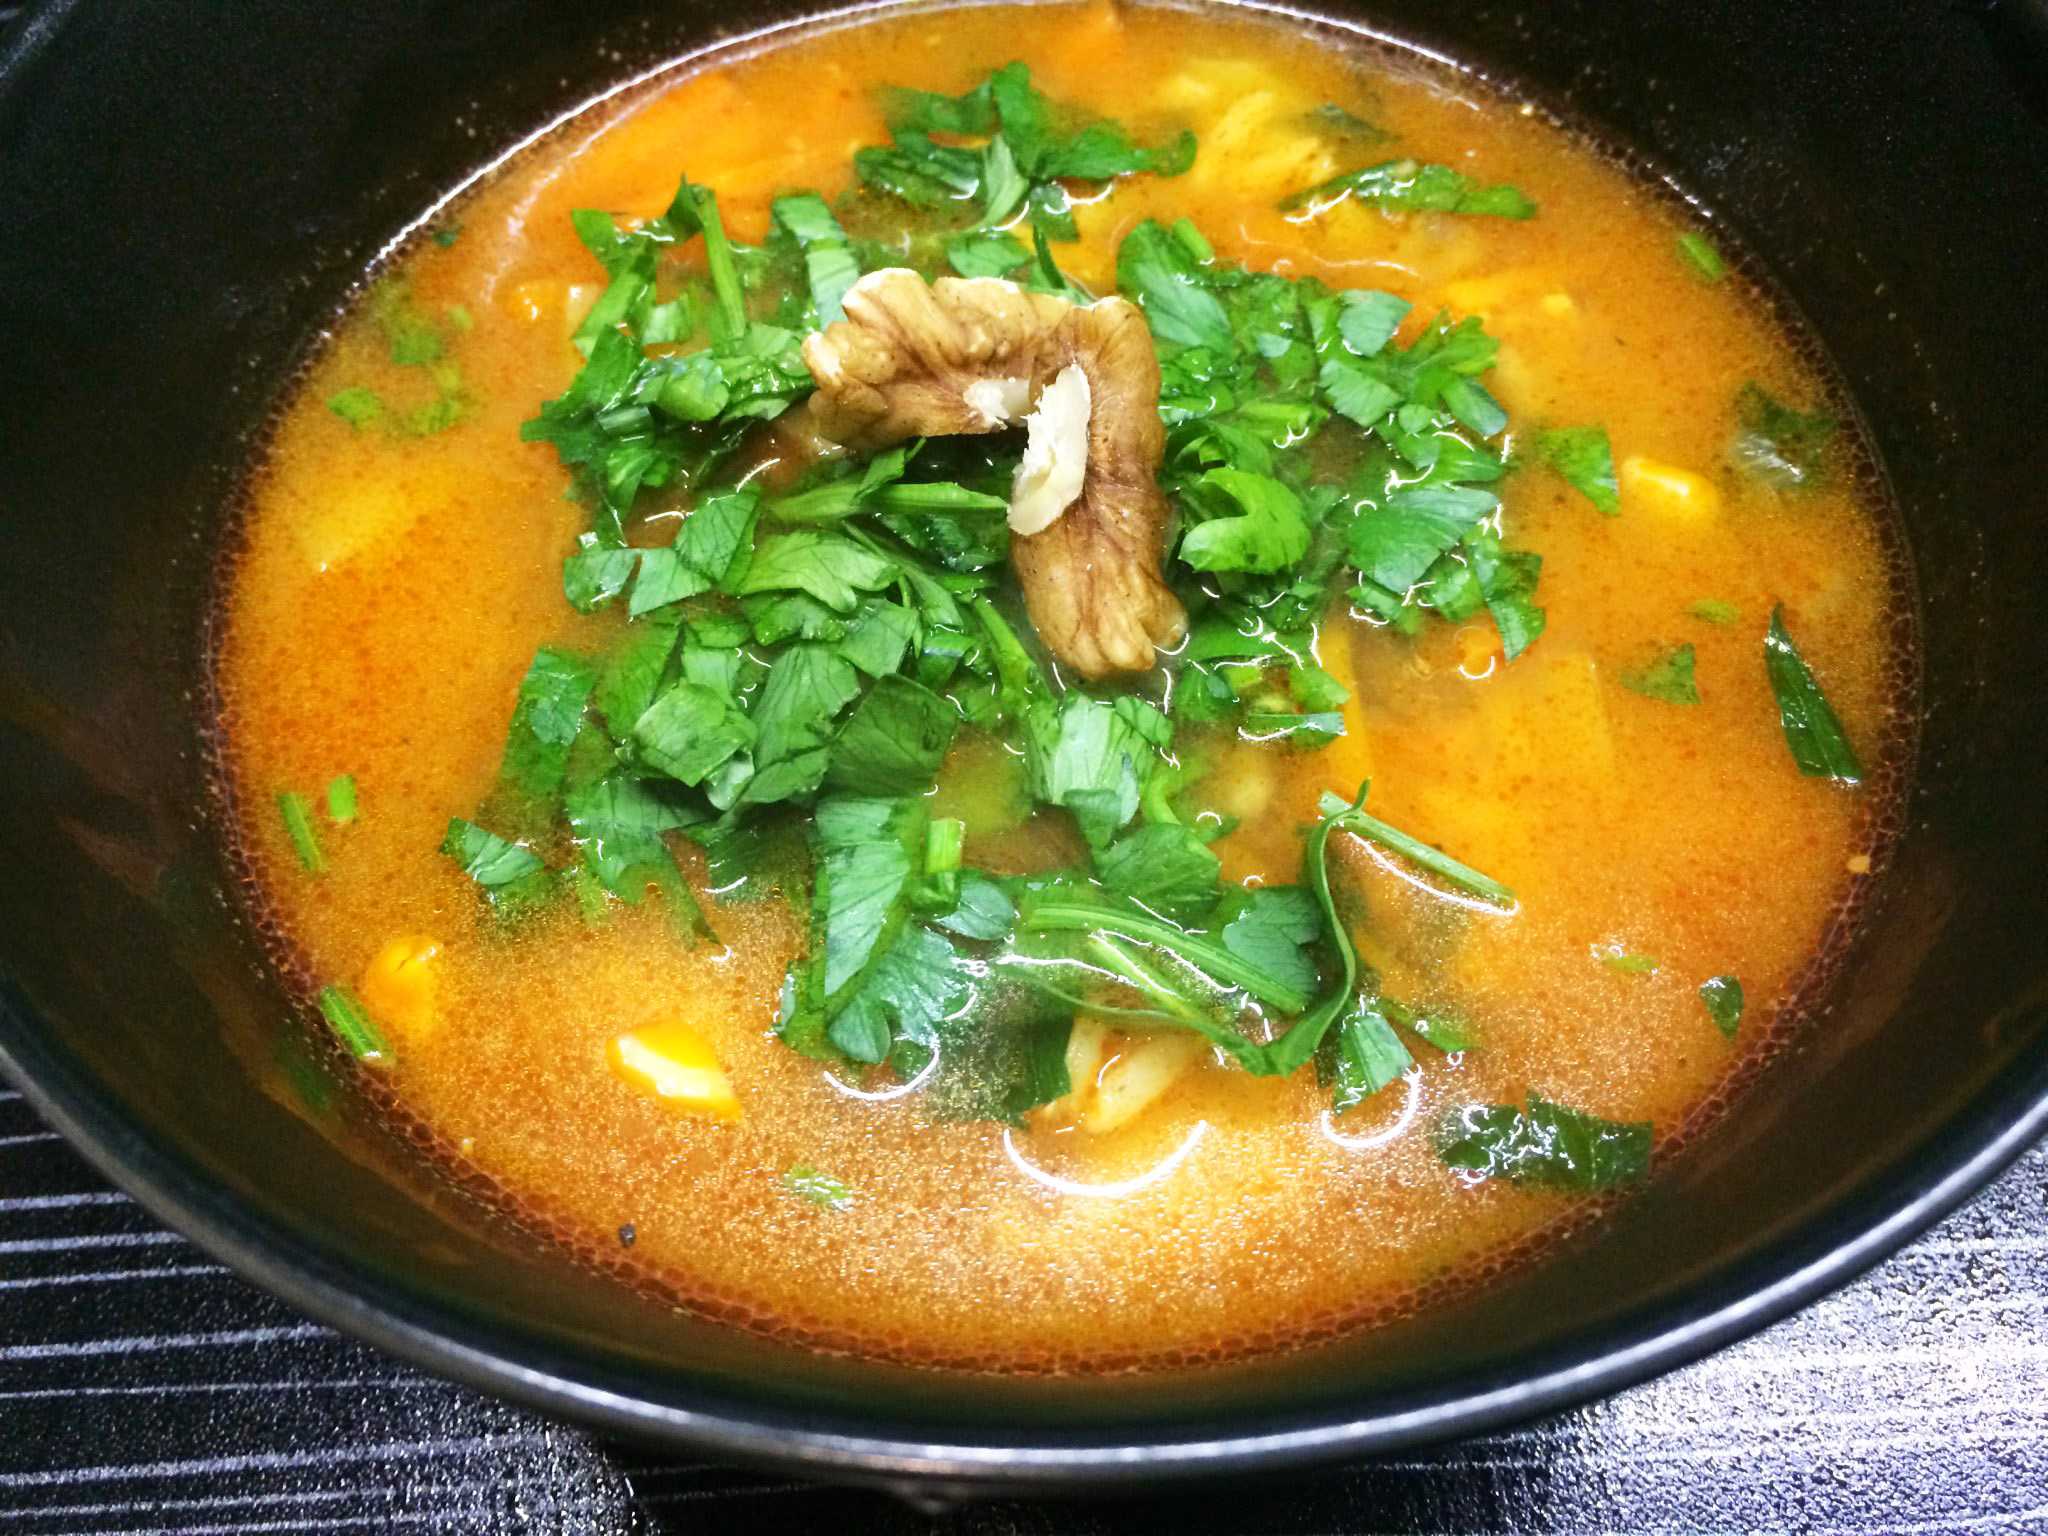 Суп рецепт приготовления с фото пошаговое фото